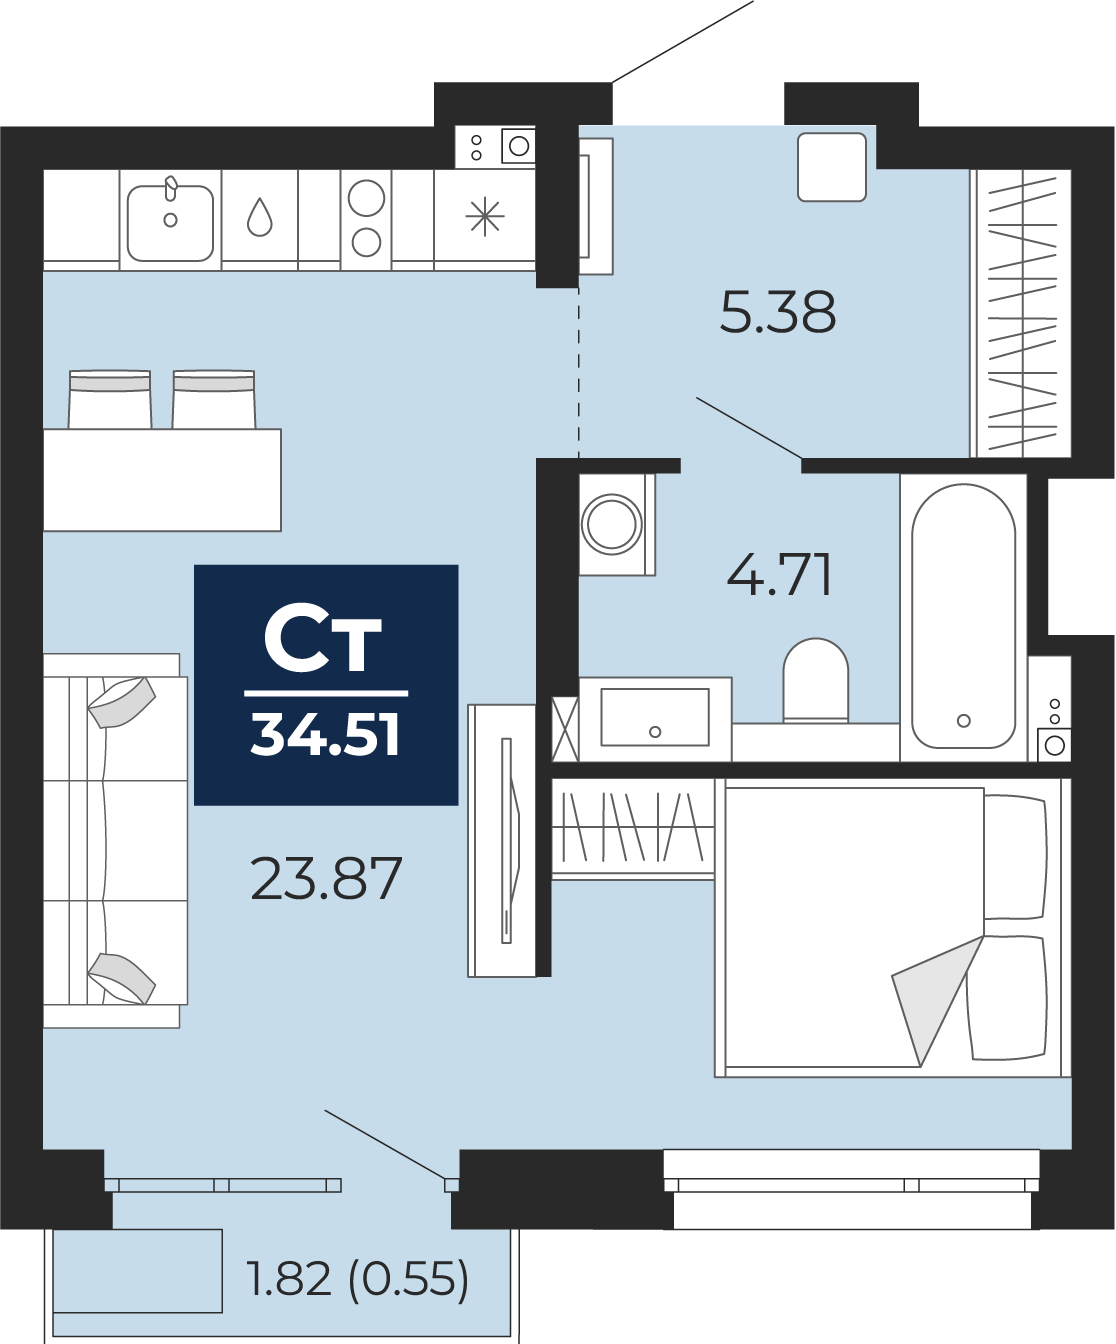 Квартира № 343, Студия, 34.51 кв. м, 4 этаж